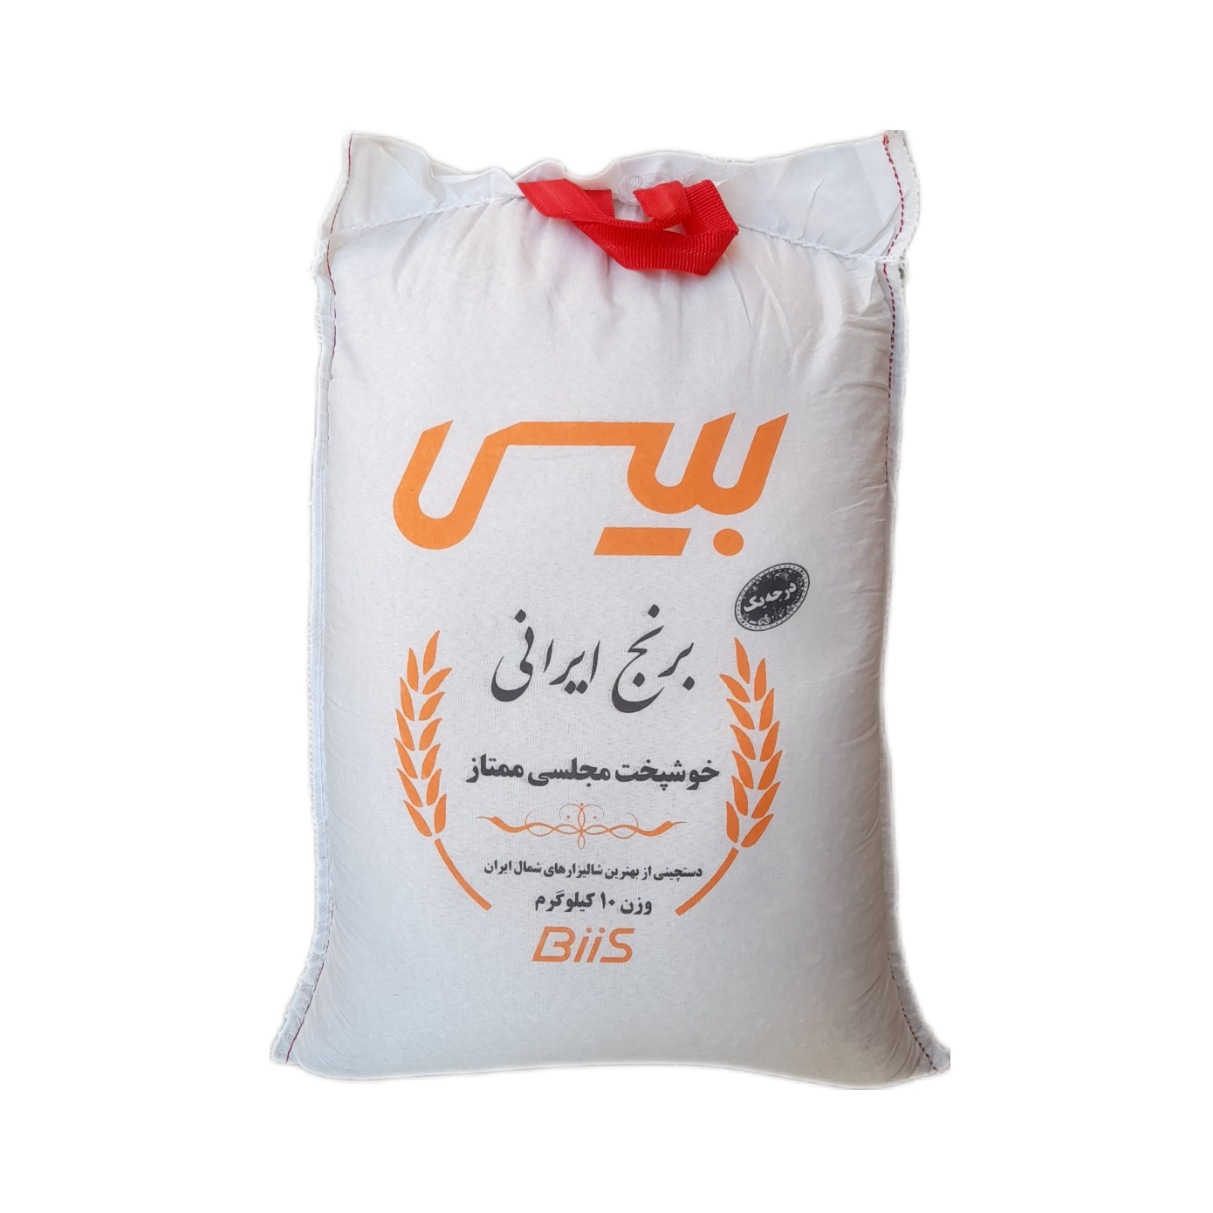 نکته خرید - قیمت روز برنج ایرانی مجلسی معطر بیس - 10 کیلوگرم خرید